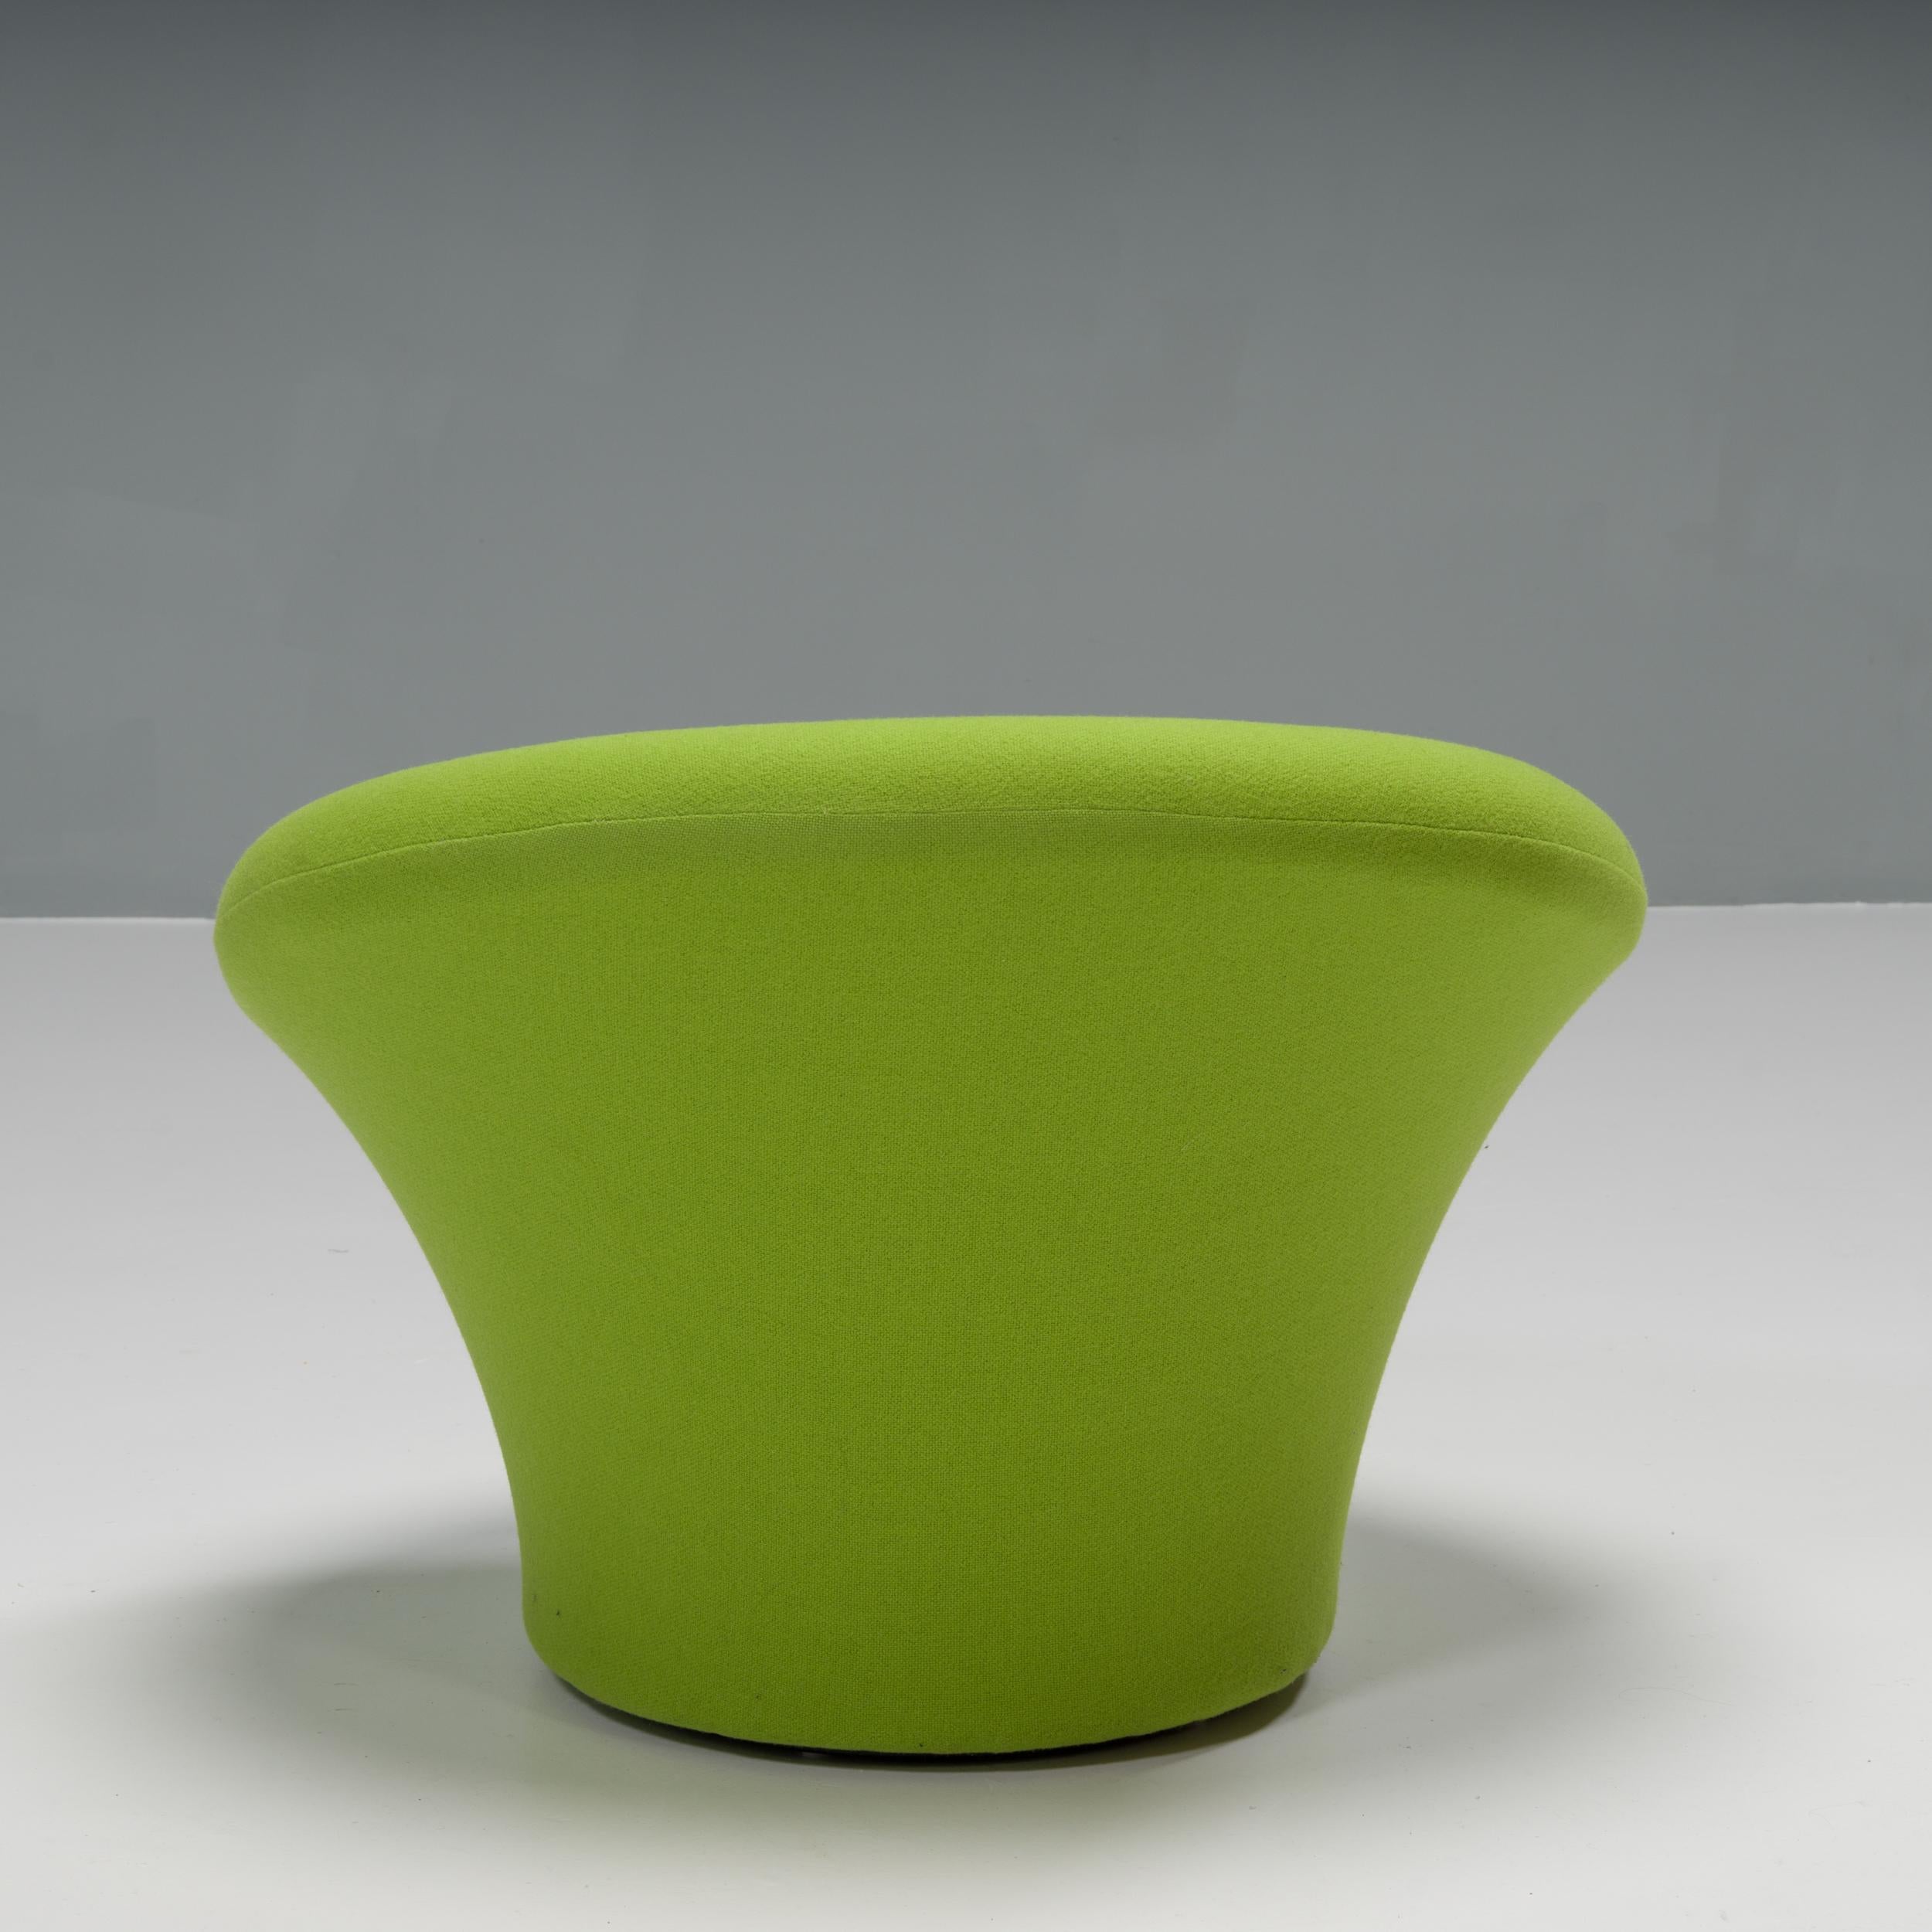 Der 1960 von Pierre Paulin in Zusammenarbeit mit Artifort entworfene Mushroom Chair, auch bekannt als F560, ist Teil der ständigen Sammlung des Museum of Modern Art und damit eine echte Design-Ikone.

Inspiriert von den Badeanzügen der Frauen, war